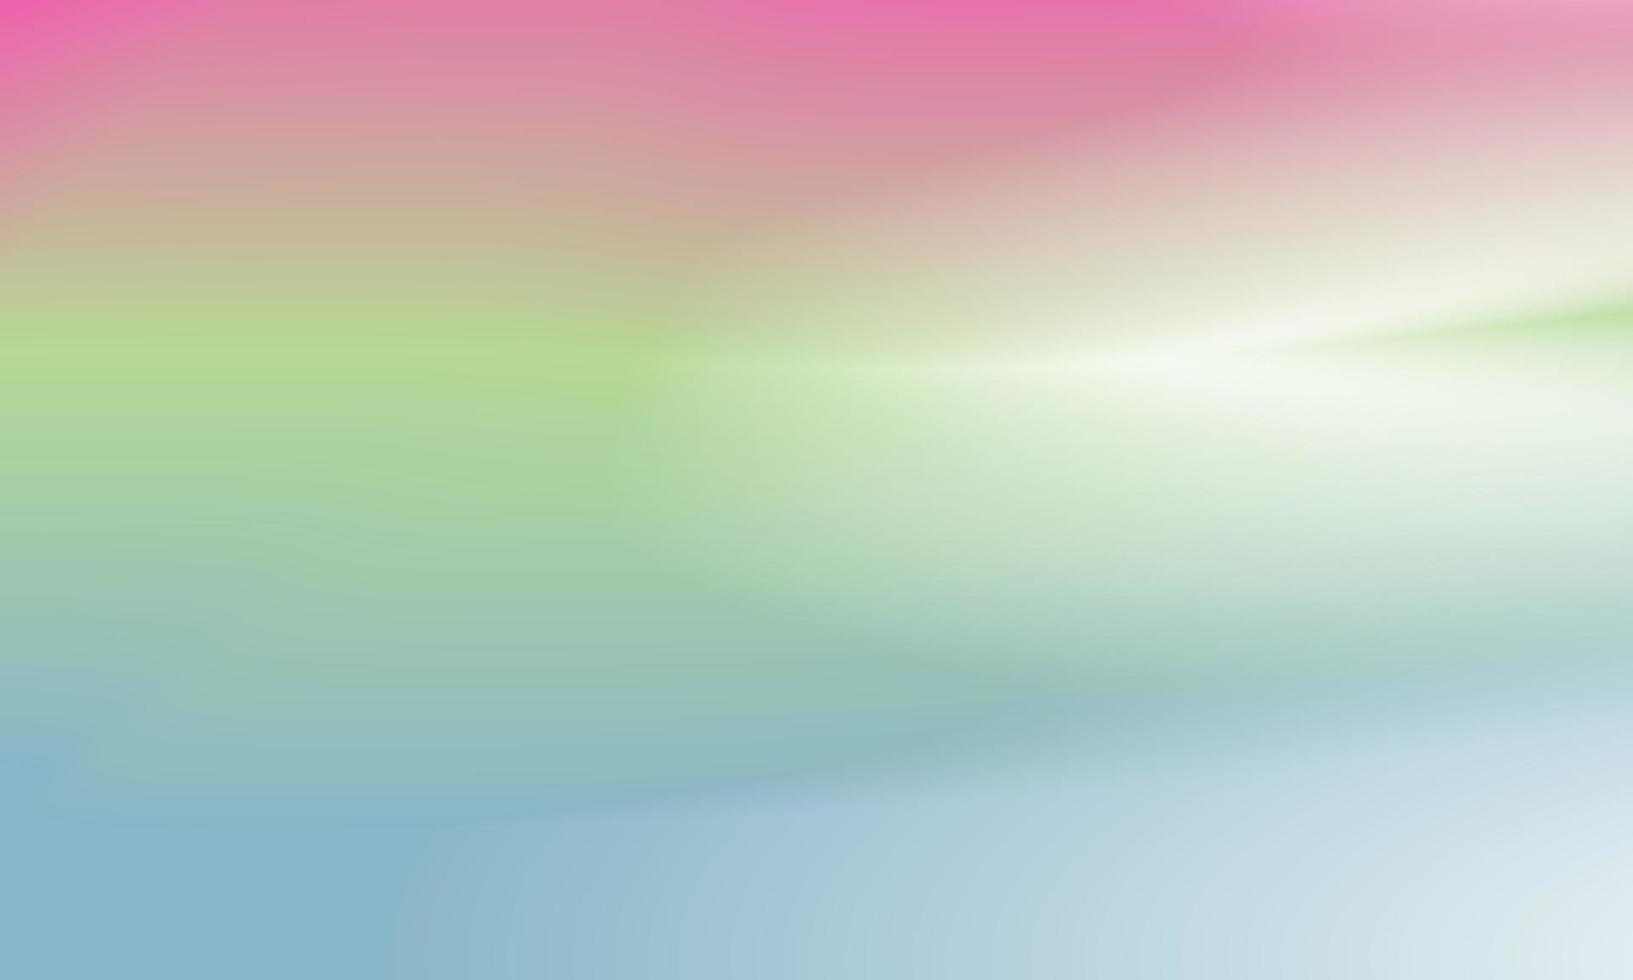 schöner Hintergrund mit Farbverlauf rosa, grün und blau glatte und weiche Textur vektor